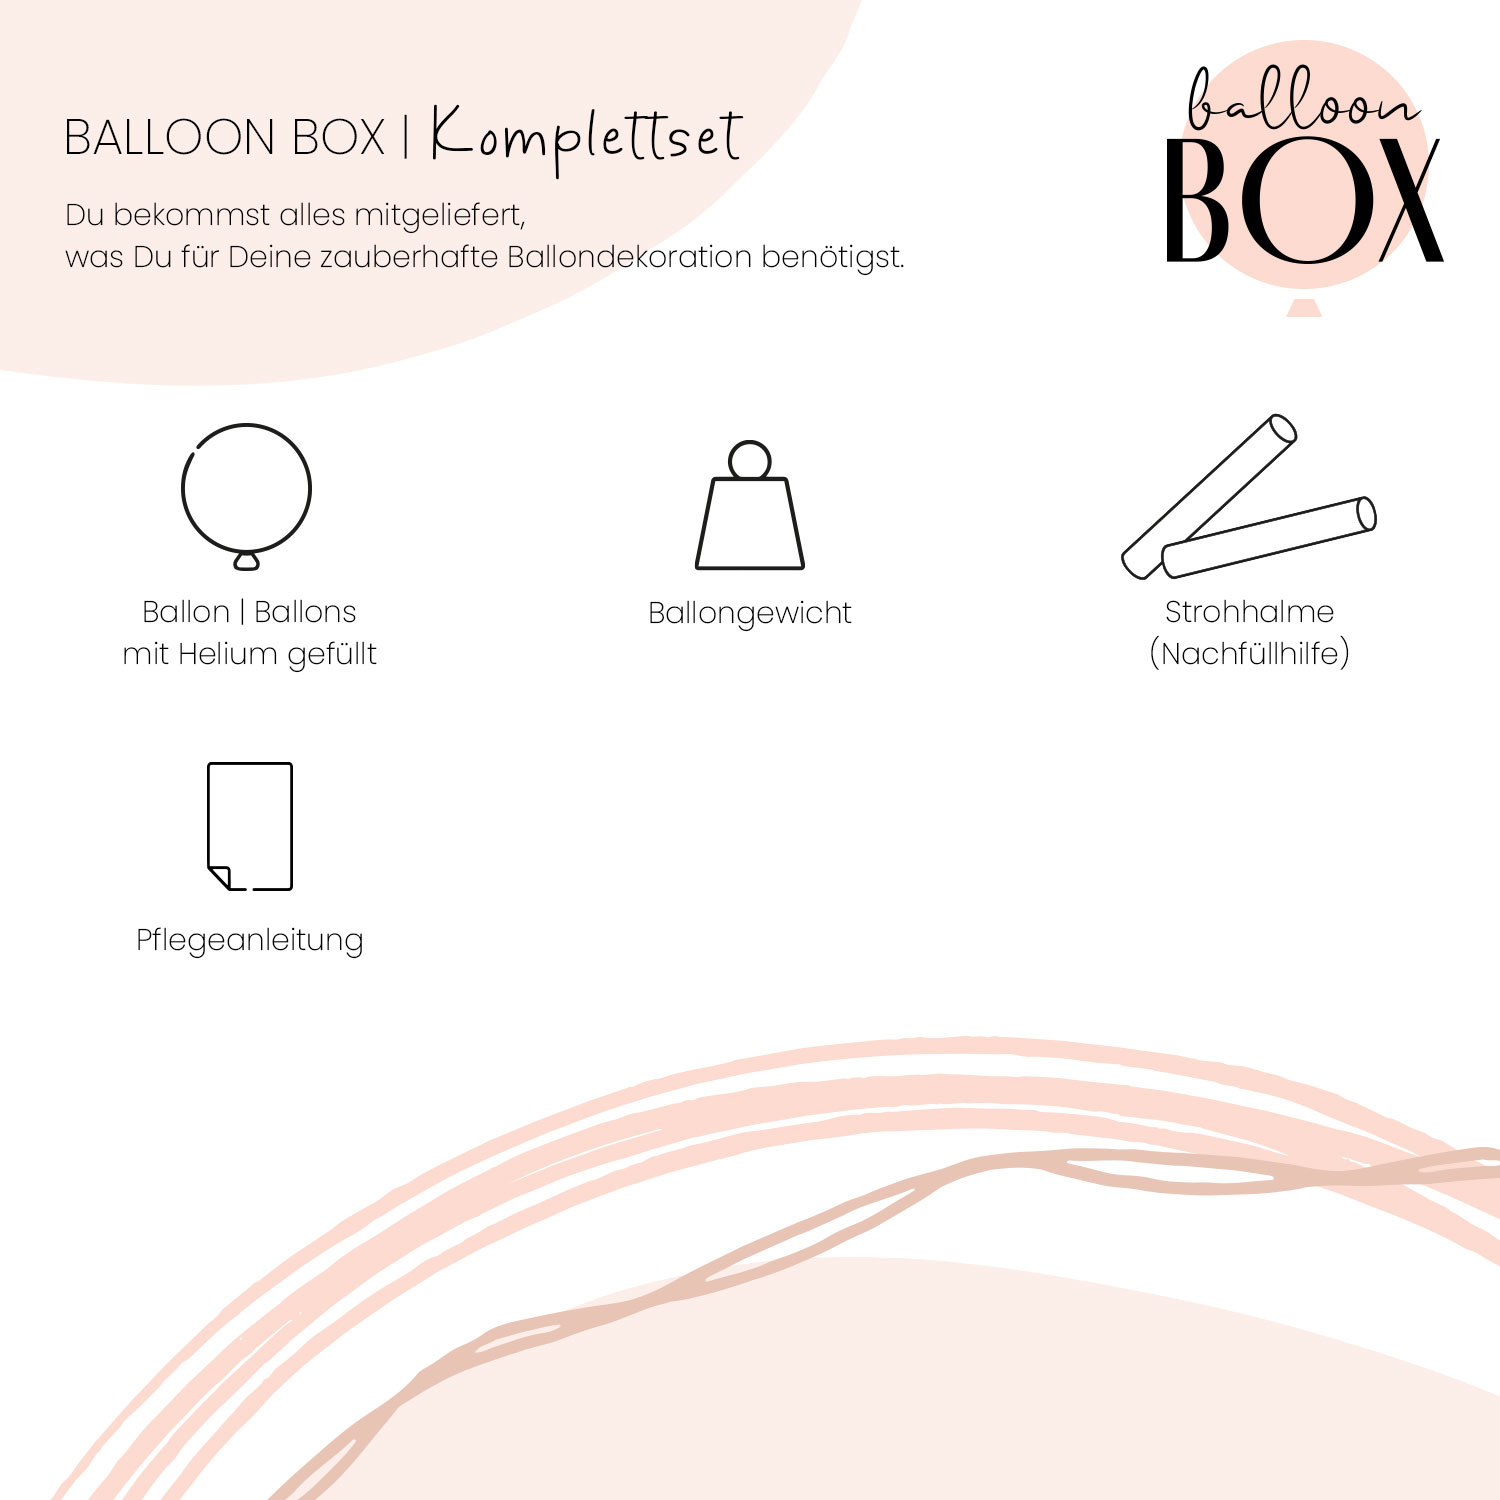 Heliumballon in a Box - Shiny Dots 40